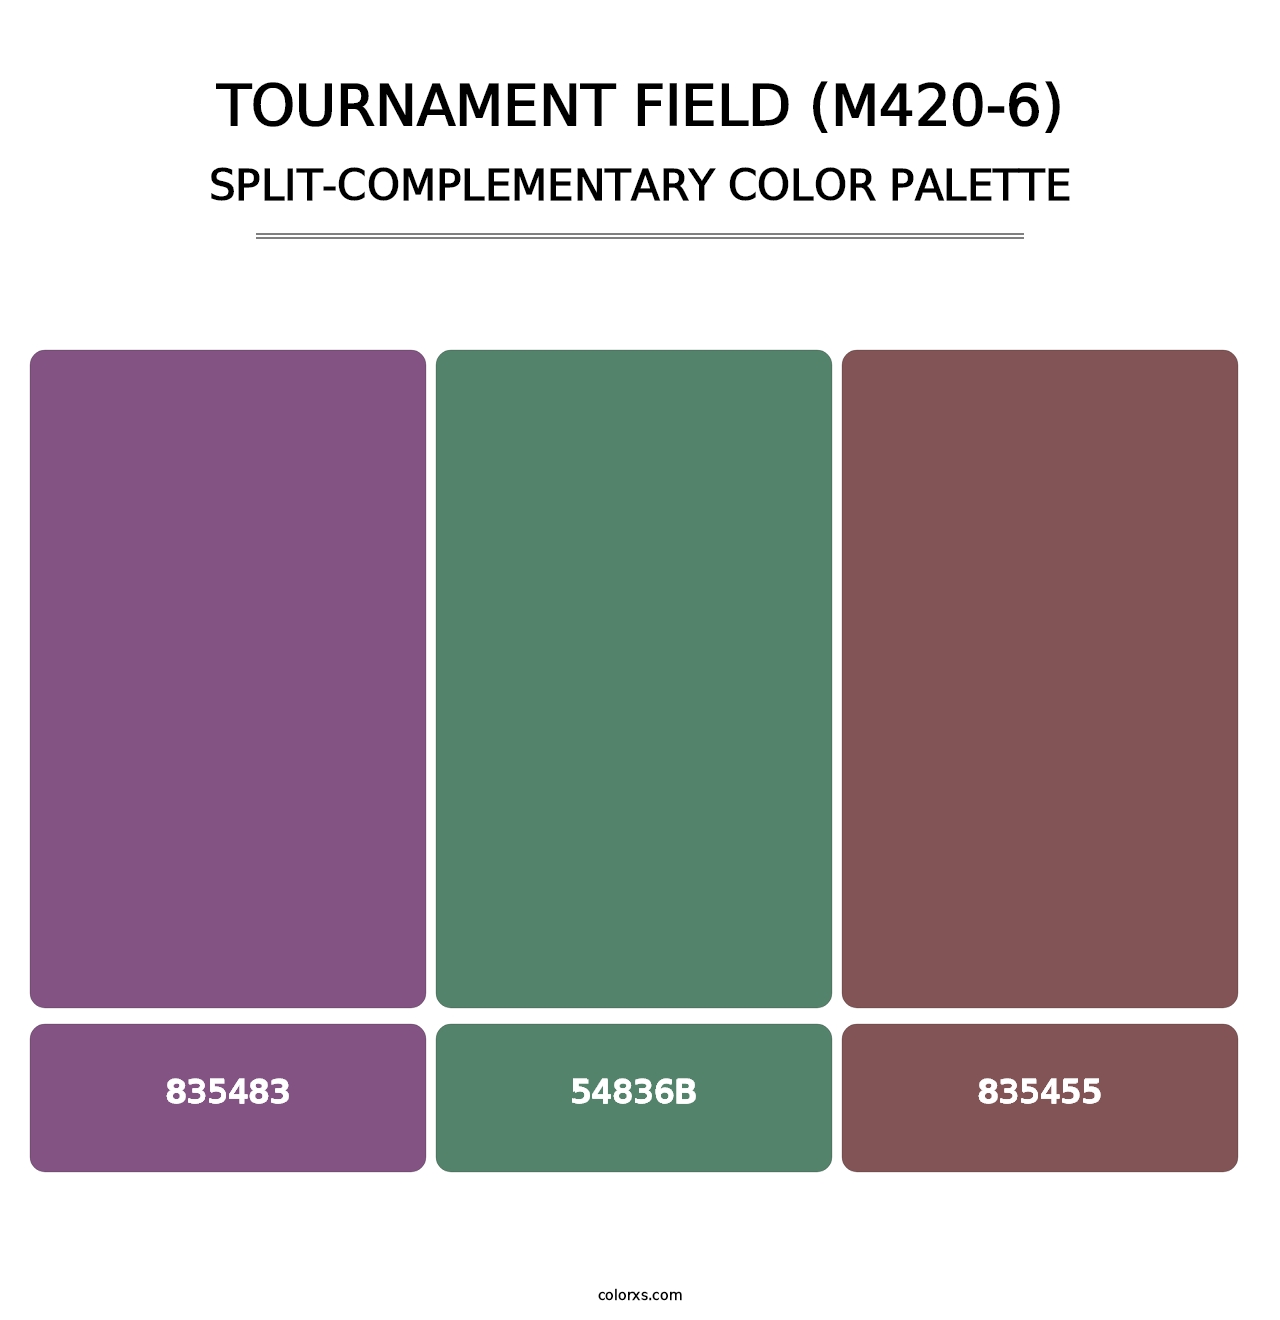 Tournament Field (M420-6) - Split-Complementary Color Palette